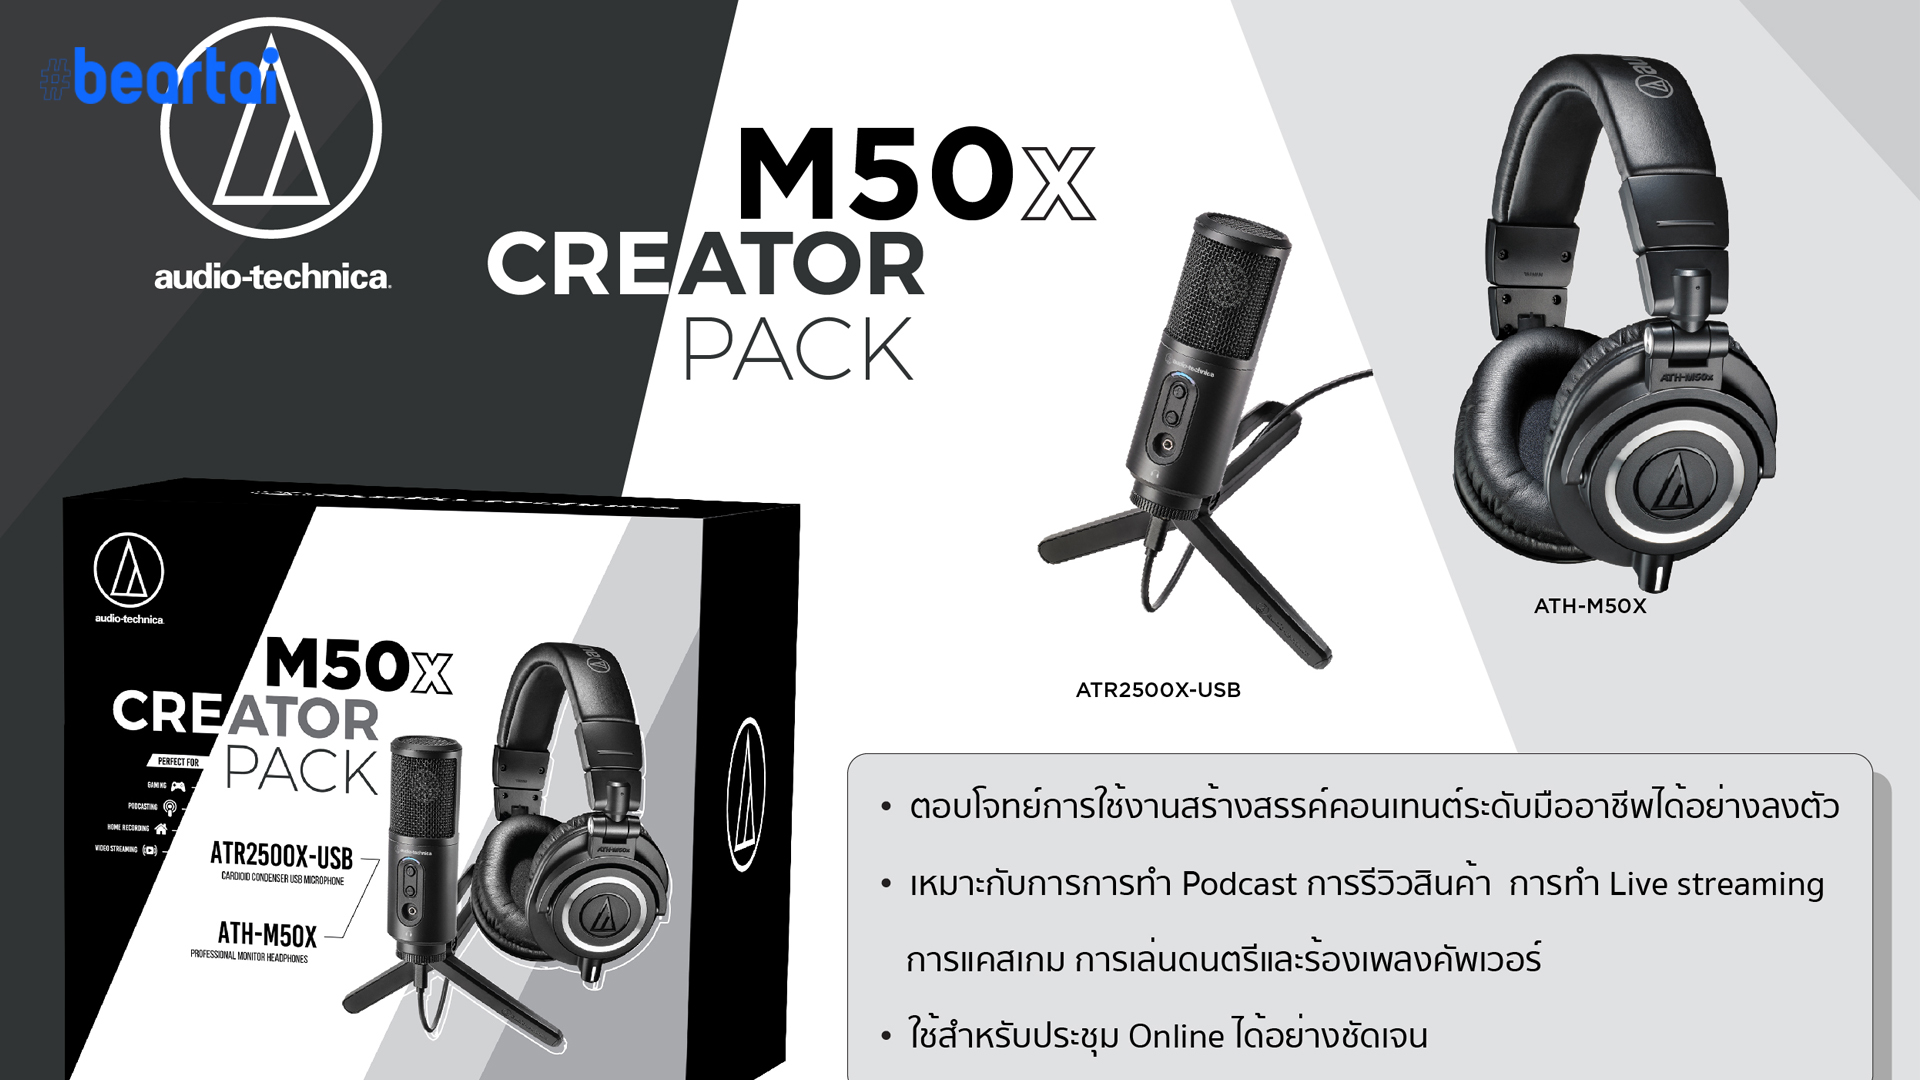 อาร์ทีบีฯ ส่งชุด M50x Creator Pack พร้อมไมโครโฟน ATR2500X-USB ในราคาสุดคุ้ม